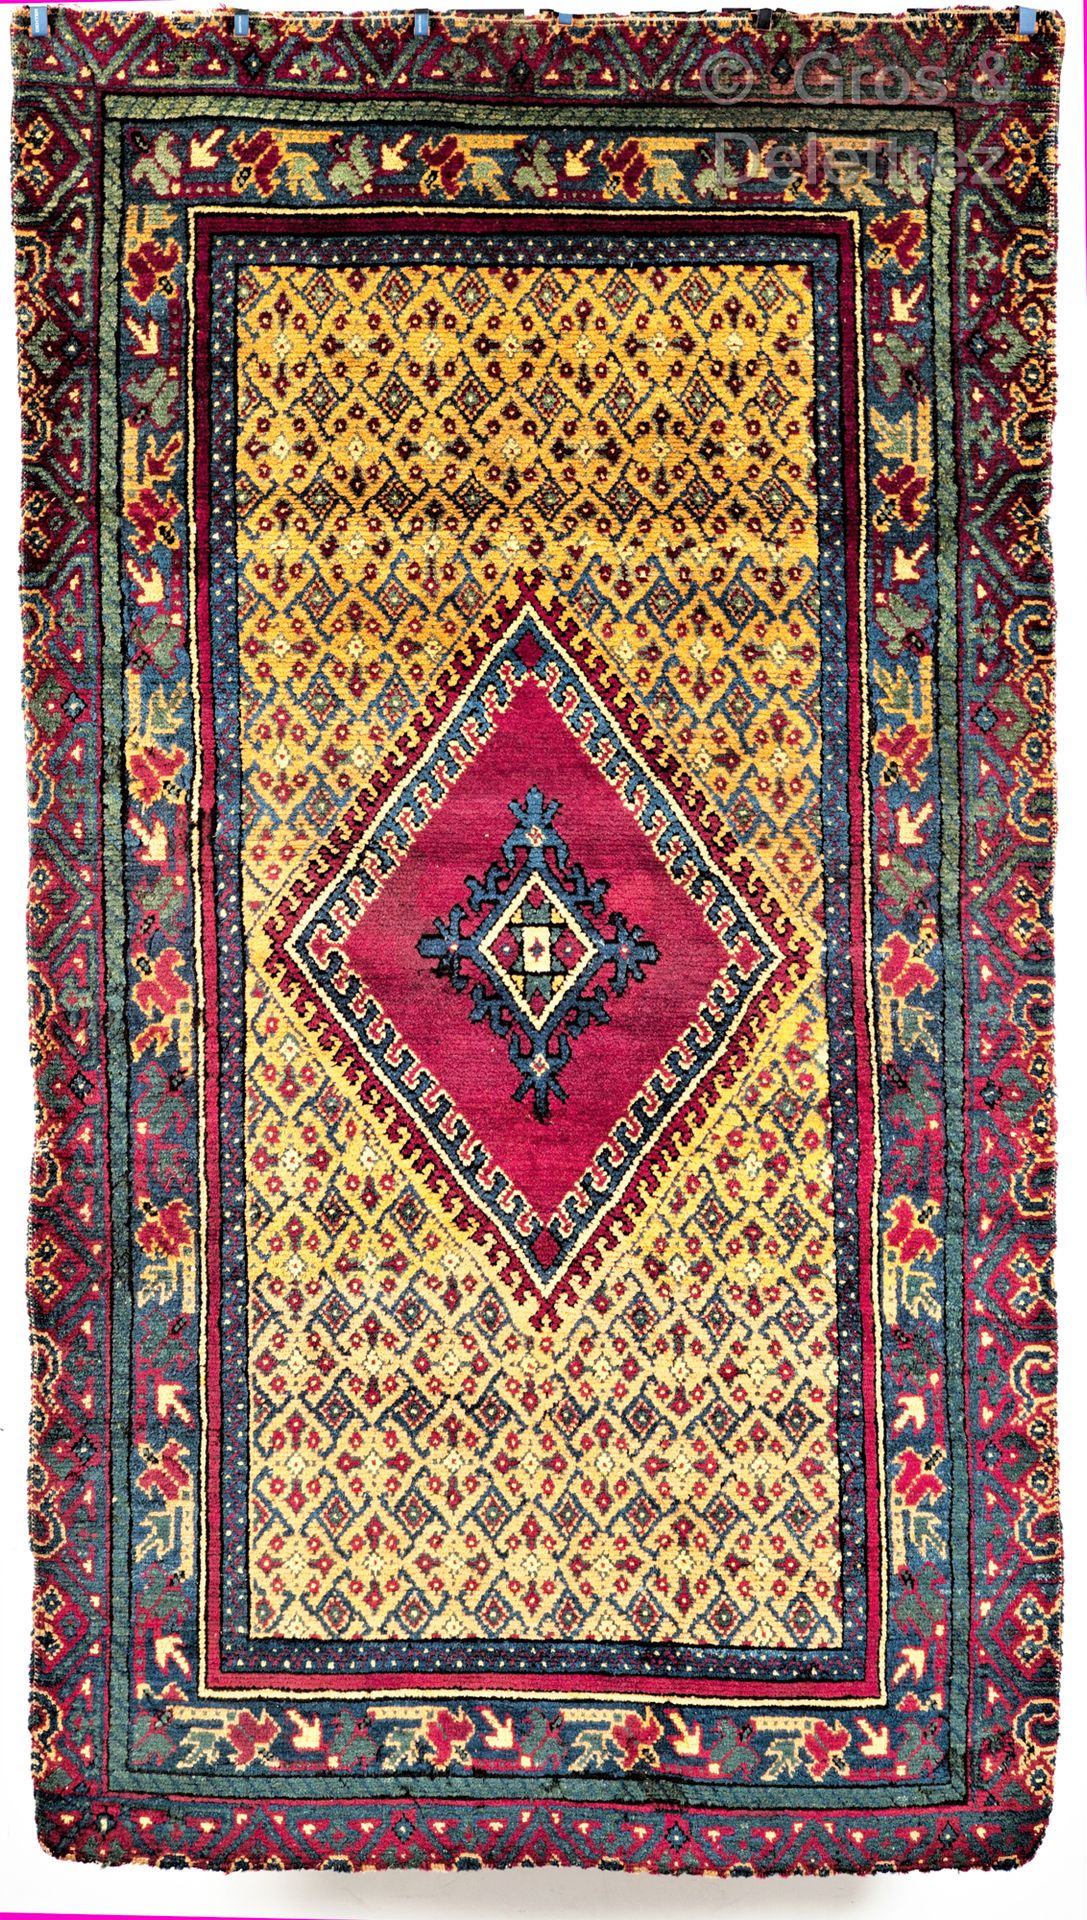 Null "来自摩洛哥或突尼斯的罕见古董作坊地毯

来自摩洛哥或突尼斯的罕见古董作坊地毯

来自摩洛哥或突尼斯的罕见古董作坊地毯。中央场地上有一个中央钻石奖章，&hellip;